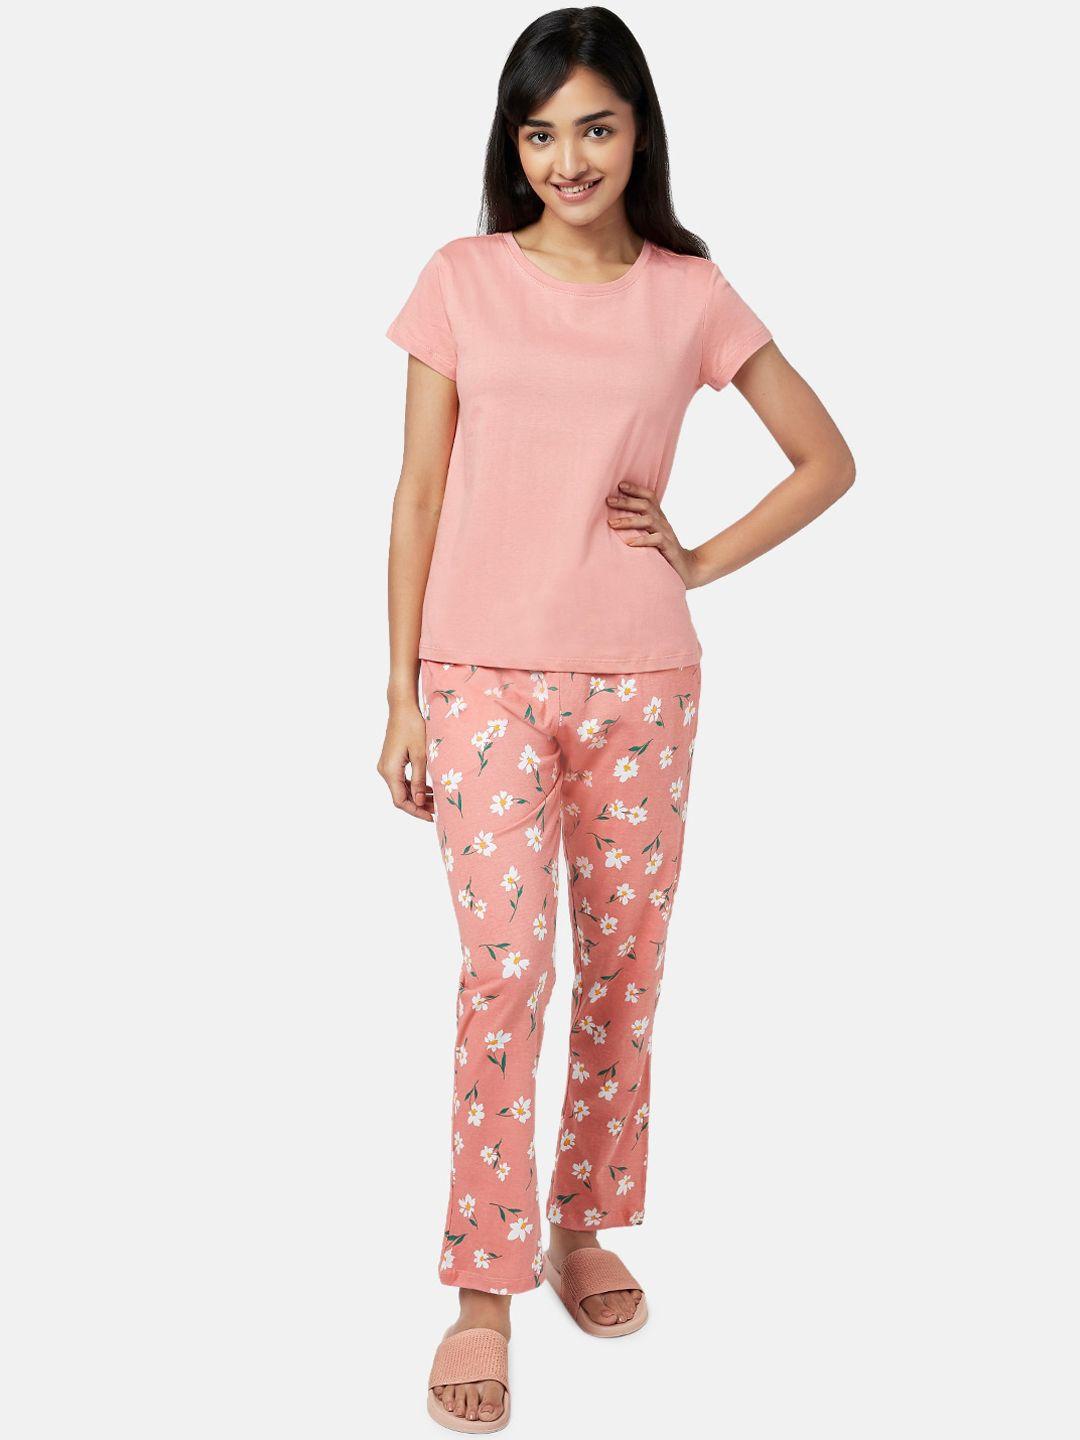 yu-by-pantaloons-women-pink-&-white-night-suit